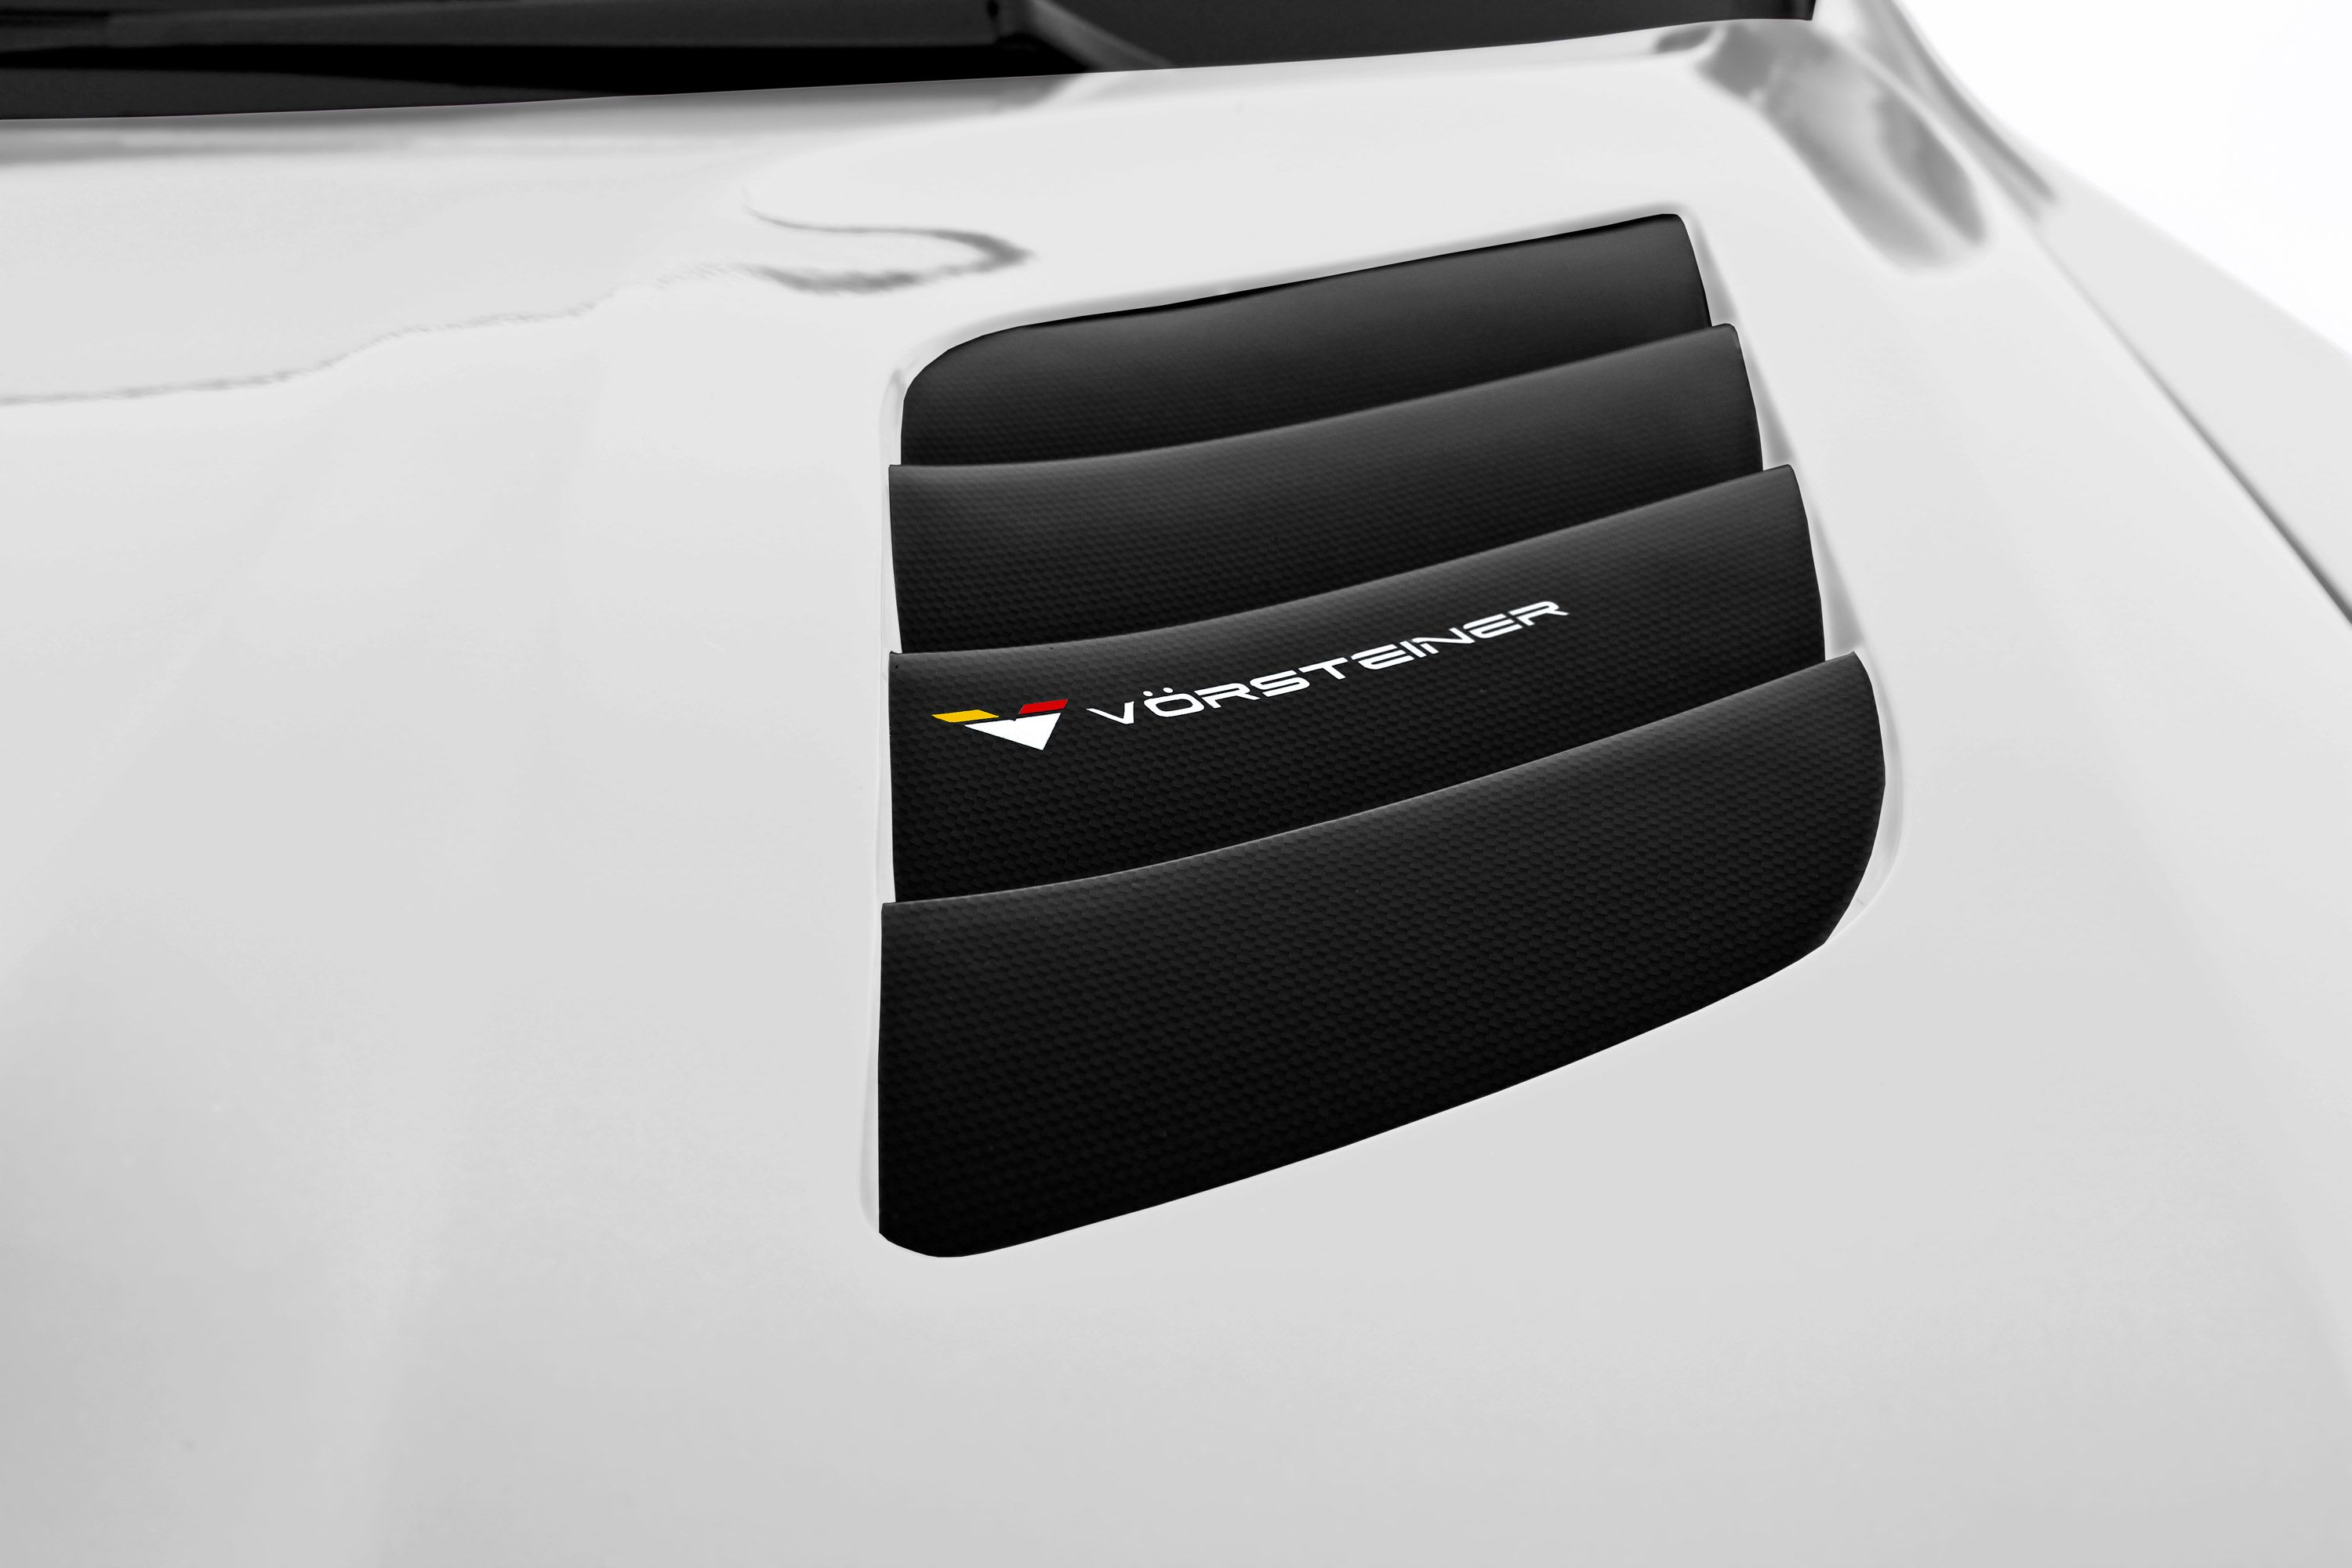 2011 BMW X5M by Vorsteiner